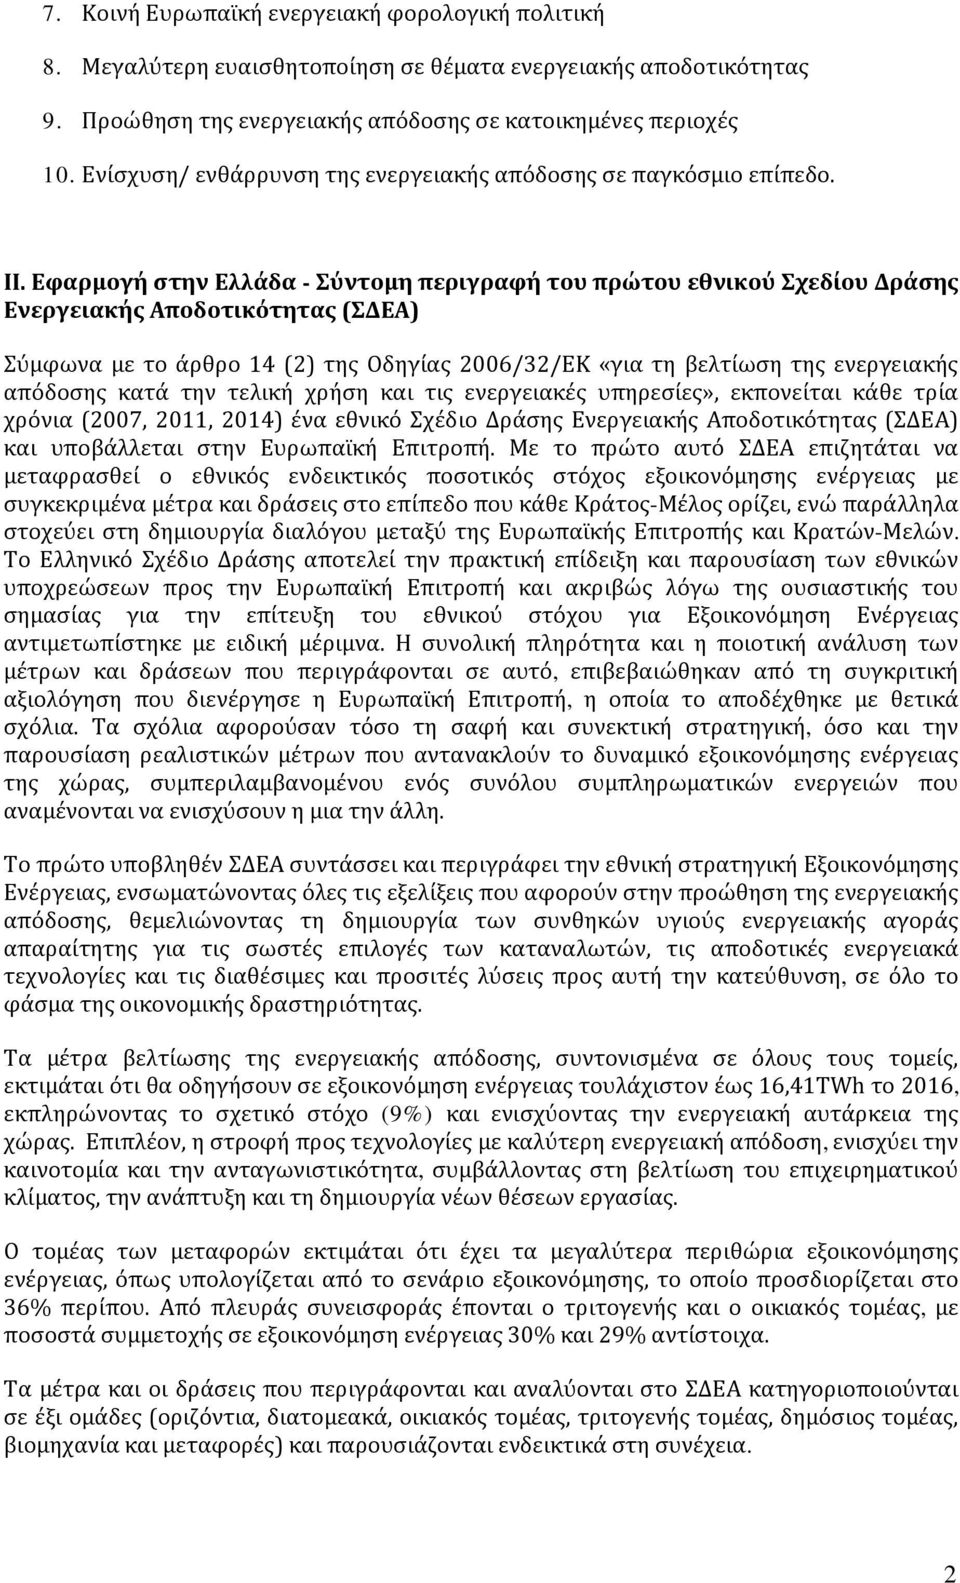 Εφαρμογή στην Ελλάδα - Σύντομη περιγραφή του πρώτου εθνικού Σχεδίου Δράσης Ενεργειακής Αποδοτικότητας (ΣΔΕΑ) Σύμφωνα με το άρθρο 14 (2) της Οδηγίας 2006/32/ΕΚ «για τη βελτίωση της ενεργειακής